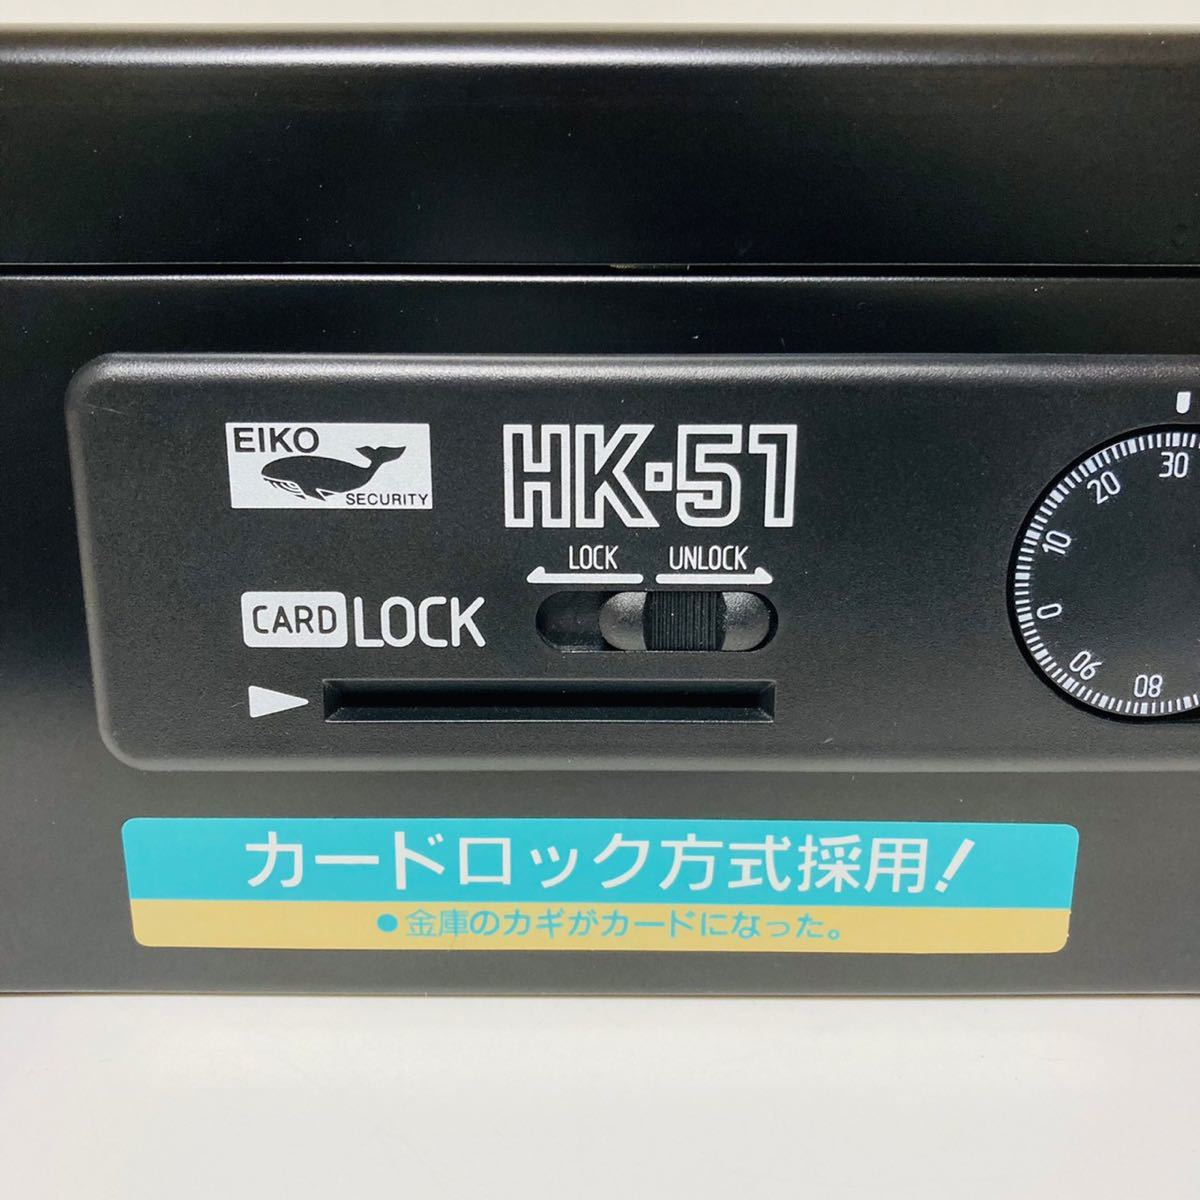 【送料無料/安心発送】EIKO SECURITY エーコー 手提げ金庫 HK-51 カードロック式方式採用！②_画像10